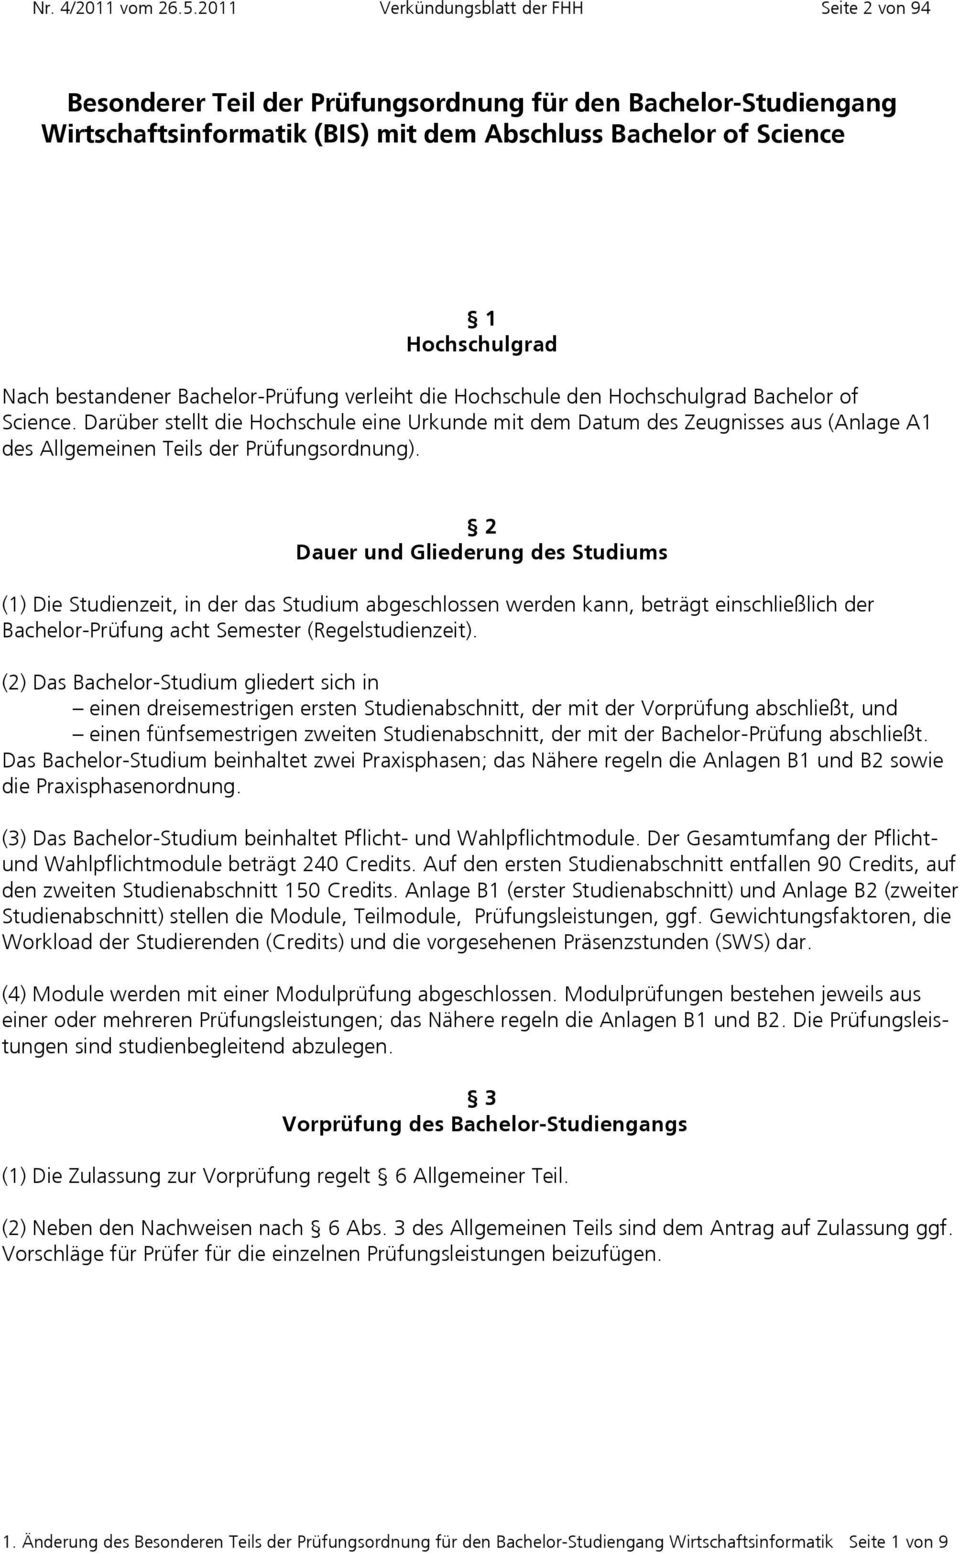 Wirtschaft und Informat der Fachhochschule Hannover (FHH) Veröffentlicht im Verkündungsblatt 3/2009 vom 23.6.2009, in der Fassung der 1. Änderung im Verkündungsblatt 4/2011 